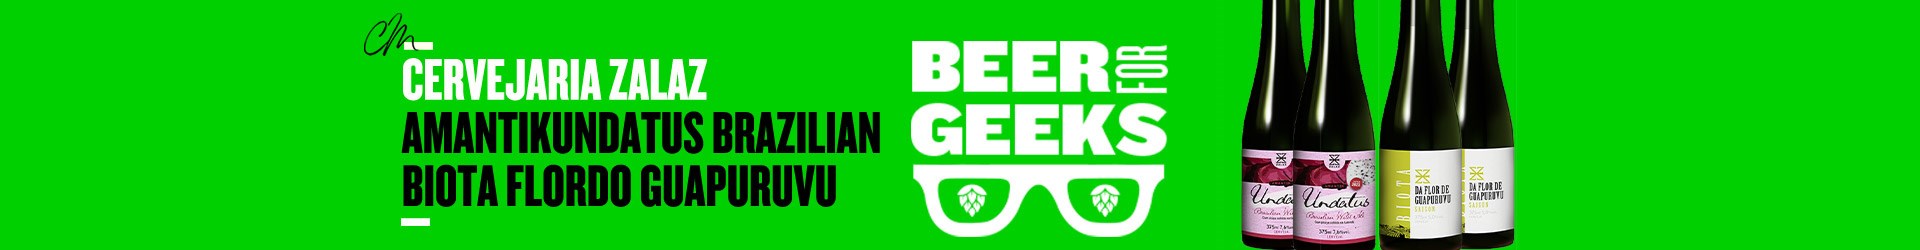 Beer for geeks: Todo mês uma nova experiência de cerveja